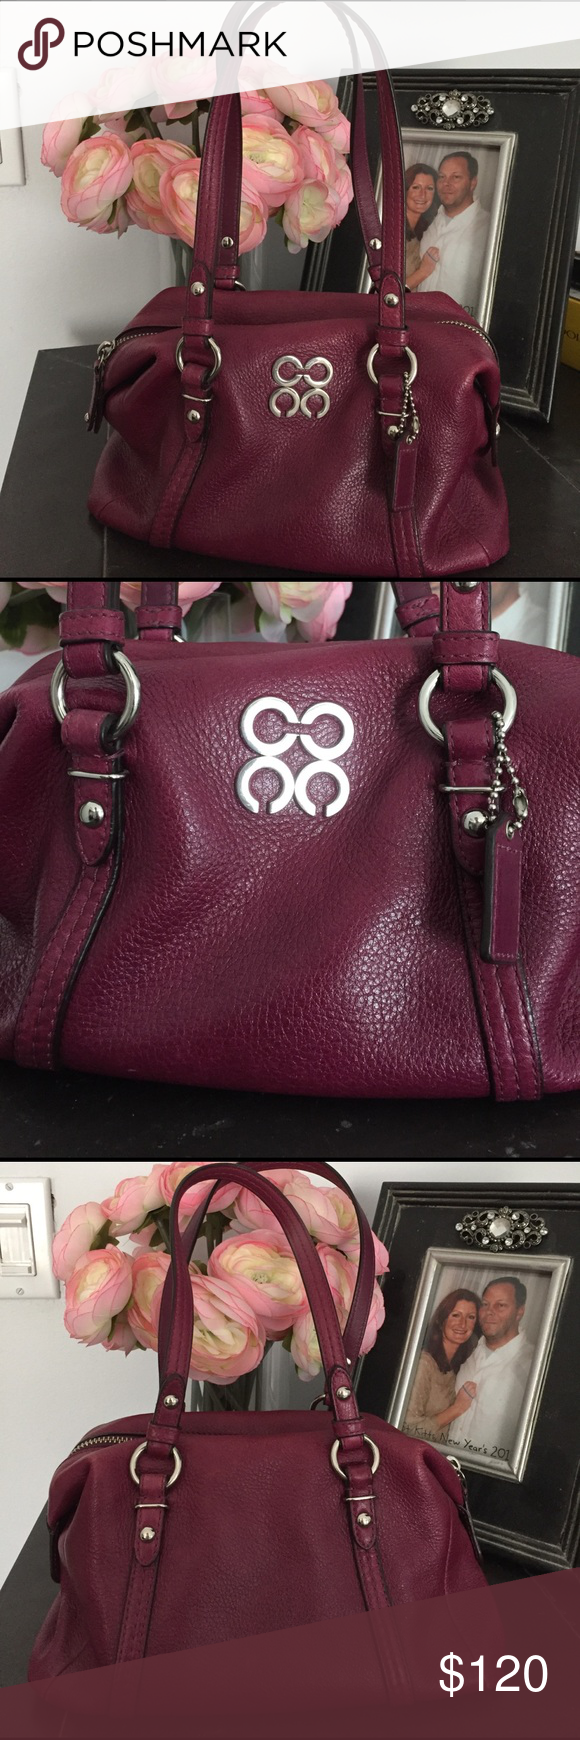 dark purple leather coach purse